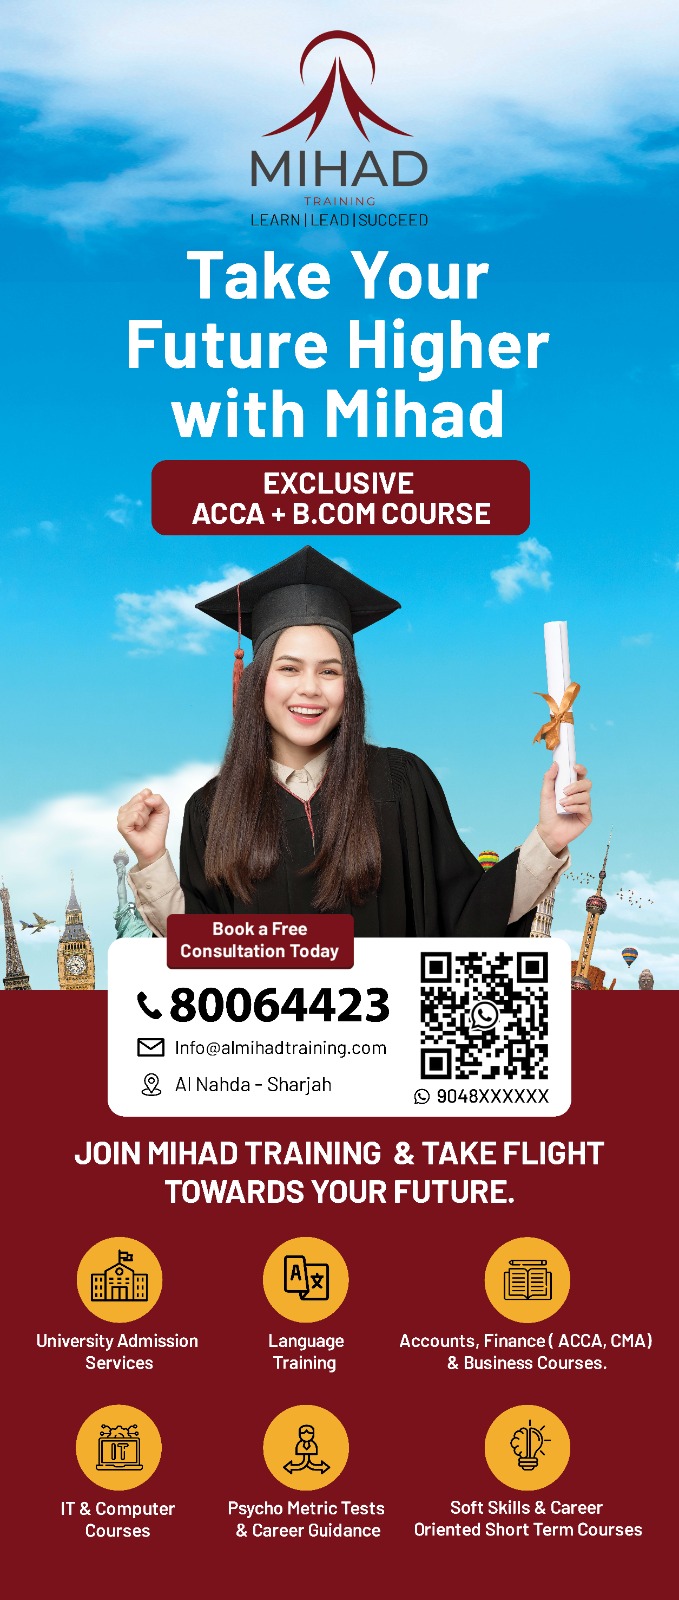 ! Our Bcom with ACCA graduation program welcomes Grade 12 grades